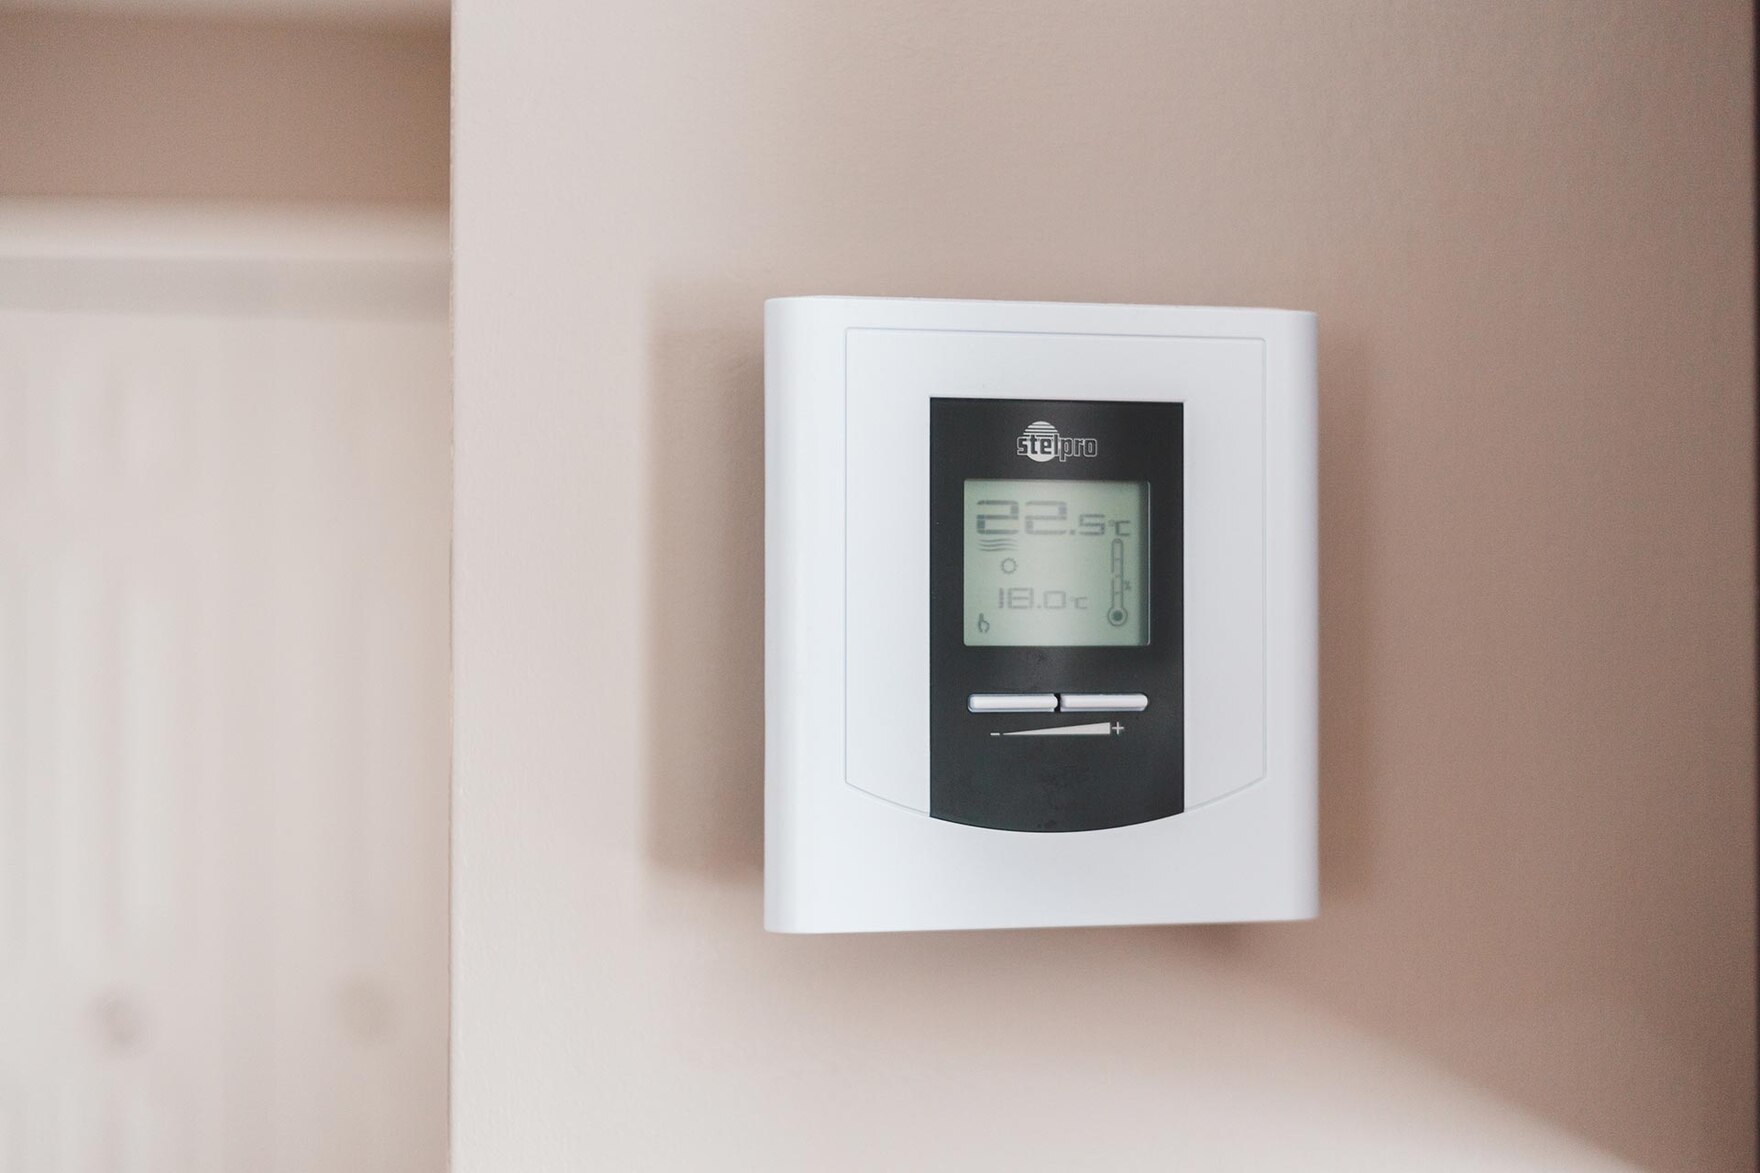 Ein Heizungs-Thermostat an einer Wand.